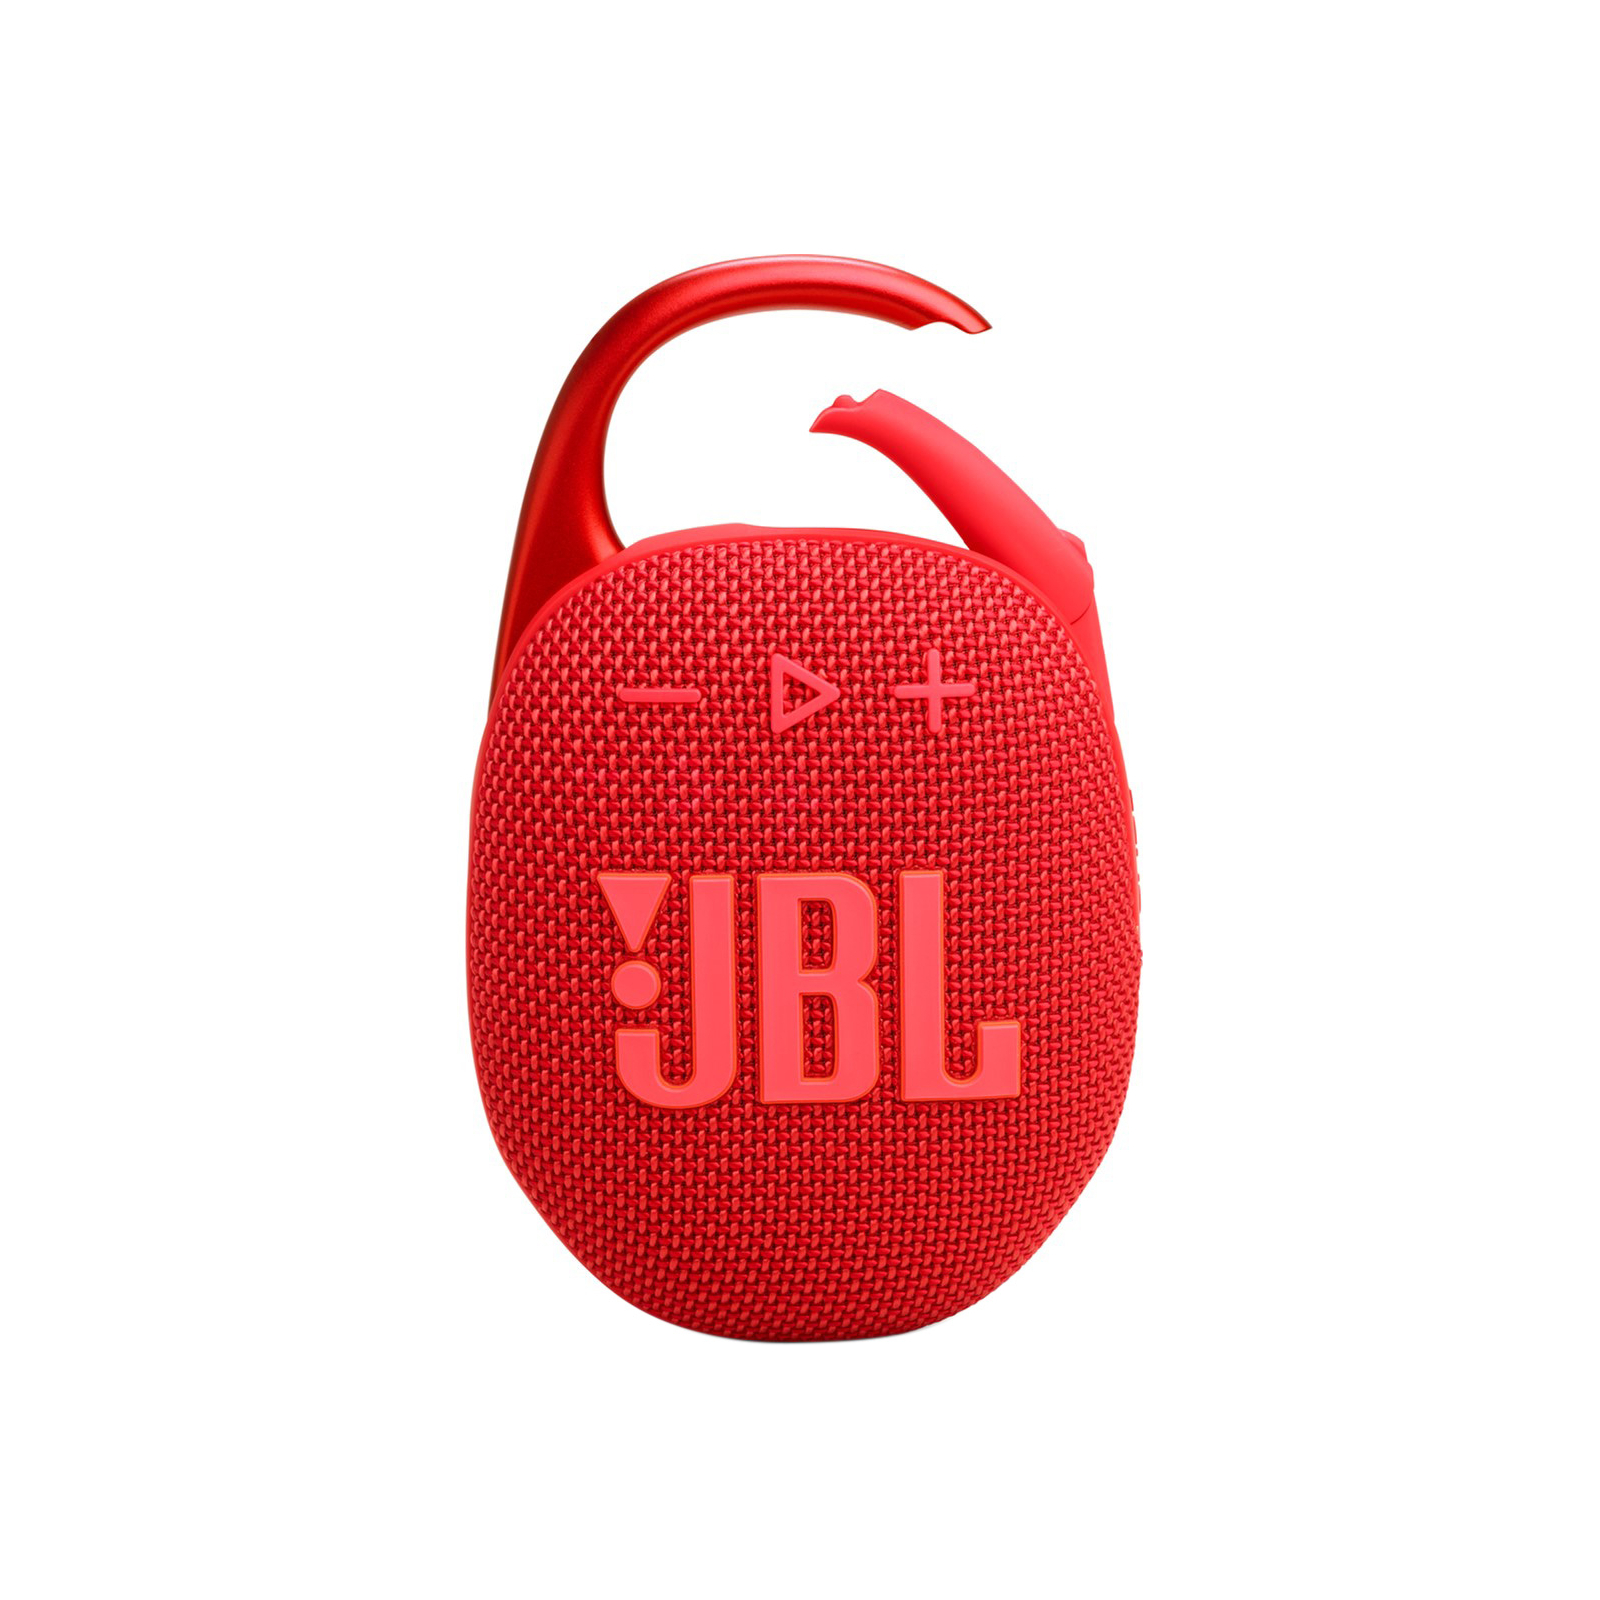 Акустическая система JBL Clip 5 Black (JBLCLIP5BLK)